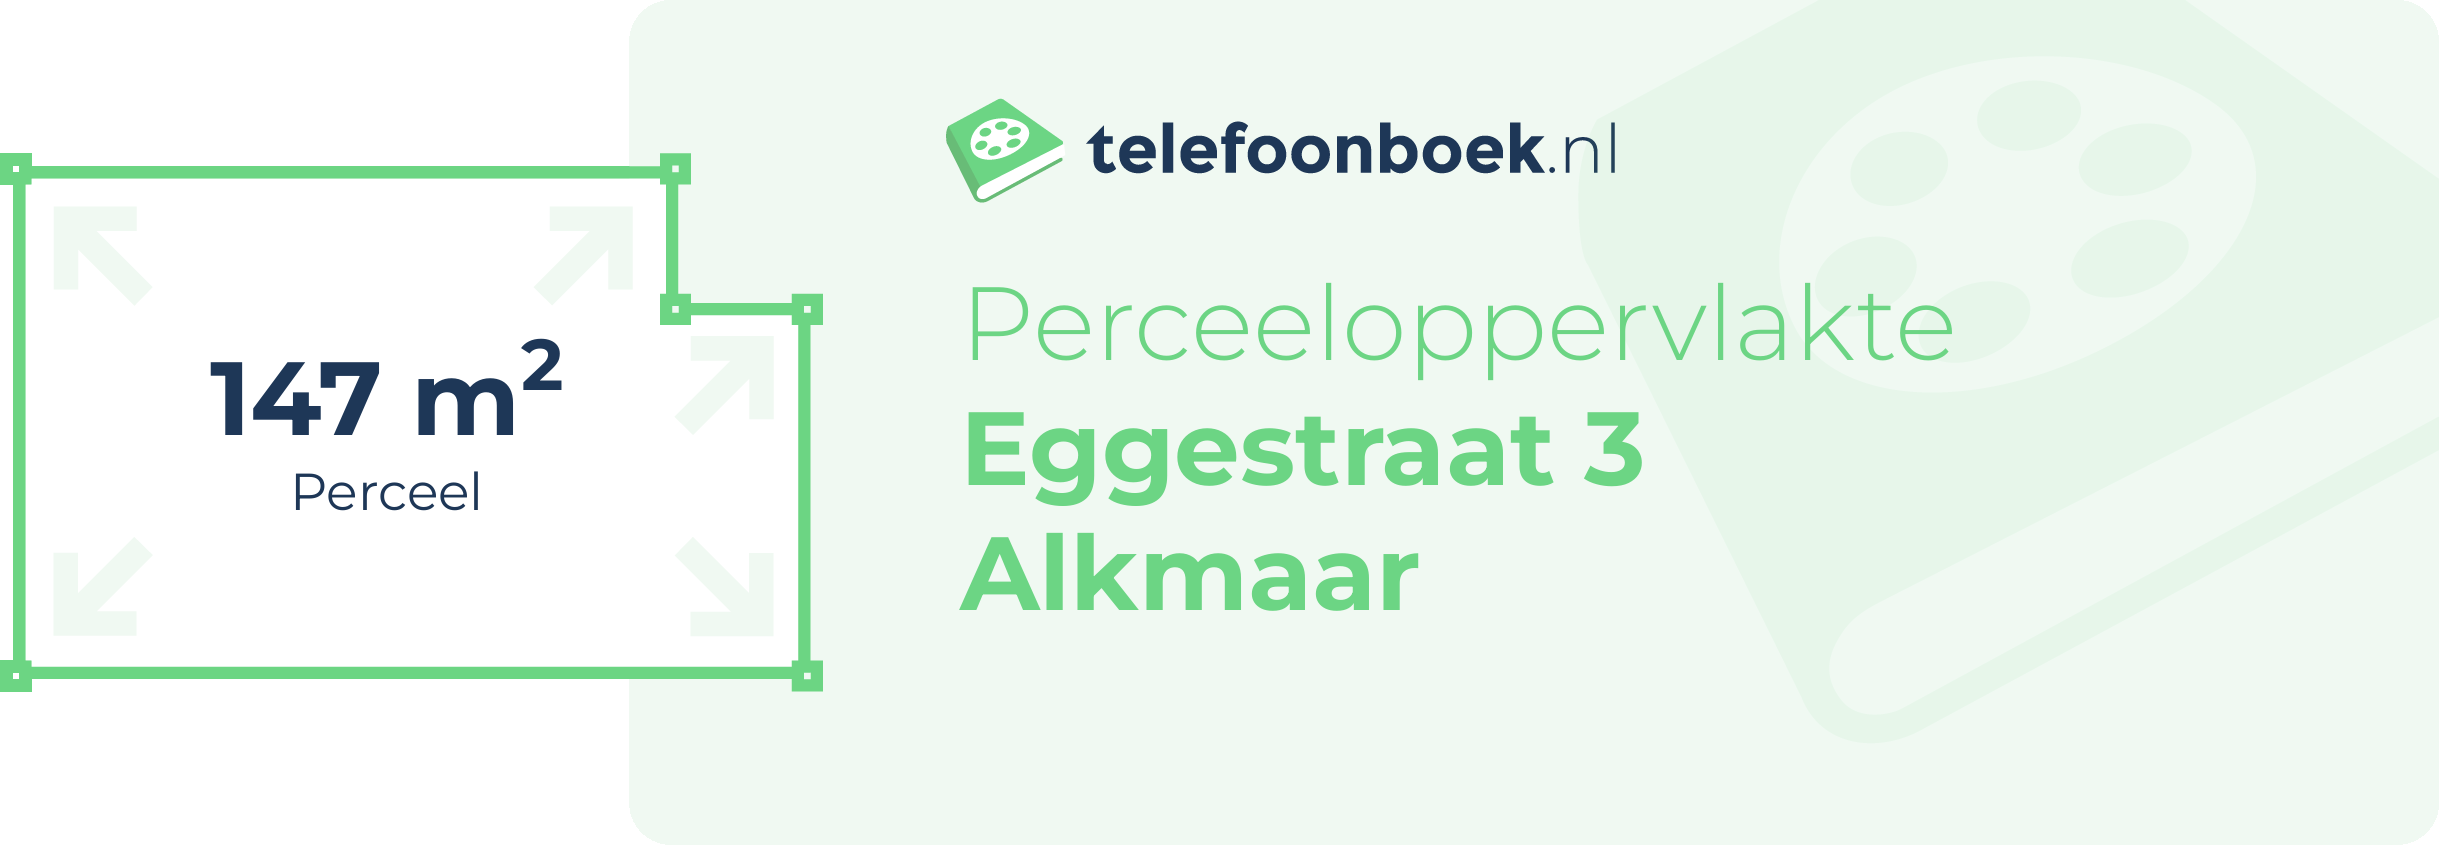 Perceeloppervlakte Eggestraat 3 Alkmaar